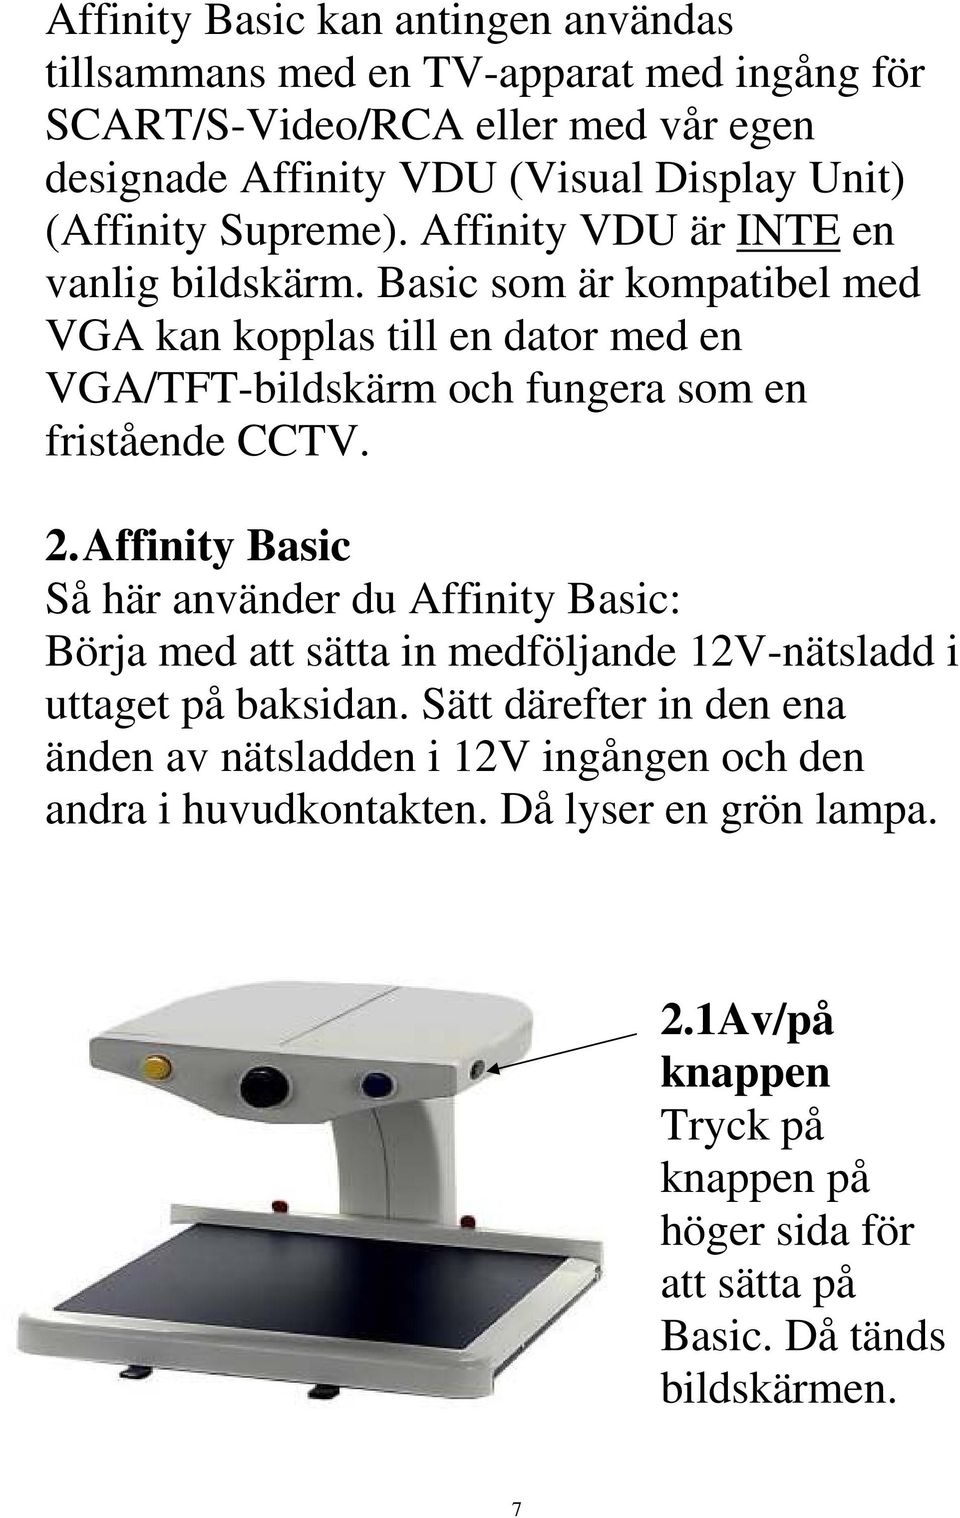 Basic som är kompatibel med VGA kan kopplas till en dator med en VGA/TFT-bildskärm och fungera som en fristående CCTV. 2.